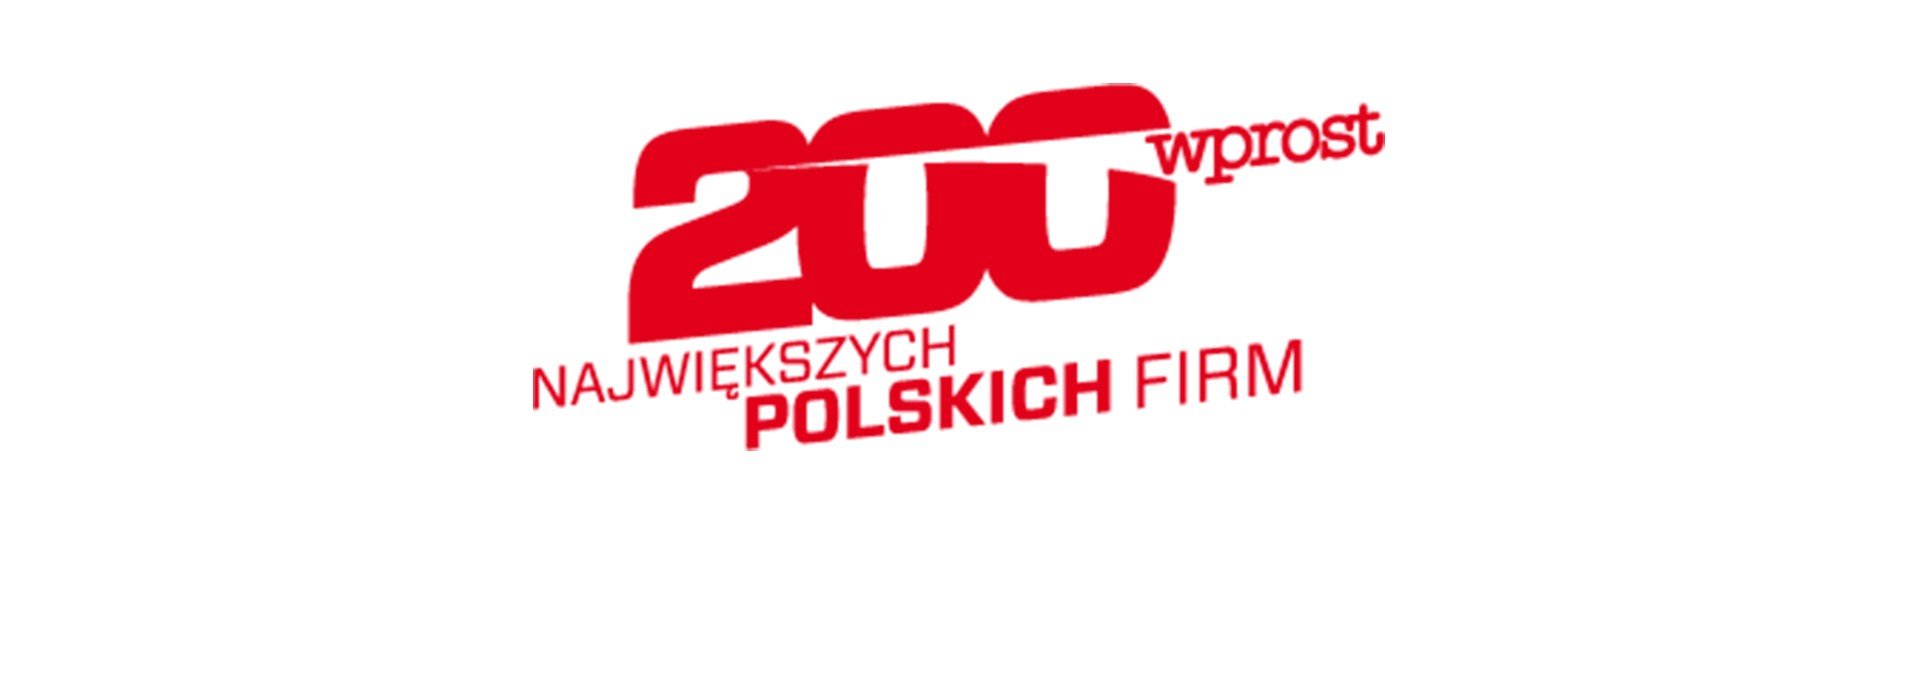 Firma Drutex na lepšej pozícii v zozname 200 najväčších poľských firiem týždenníka "Wprost"